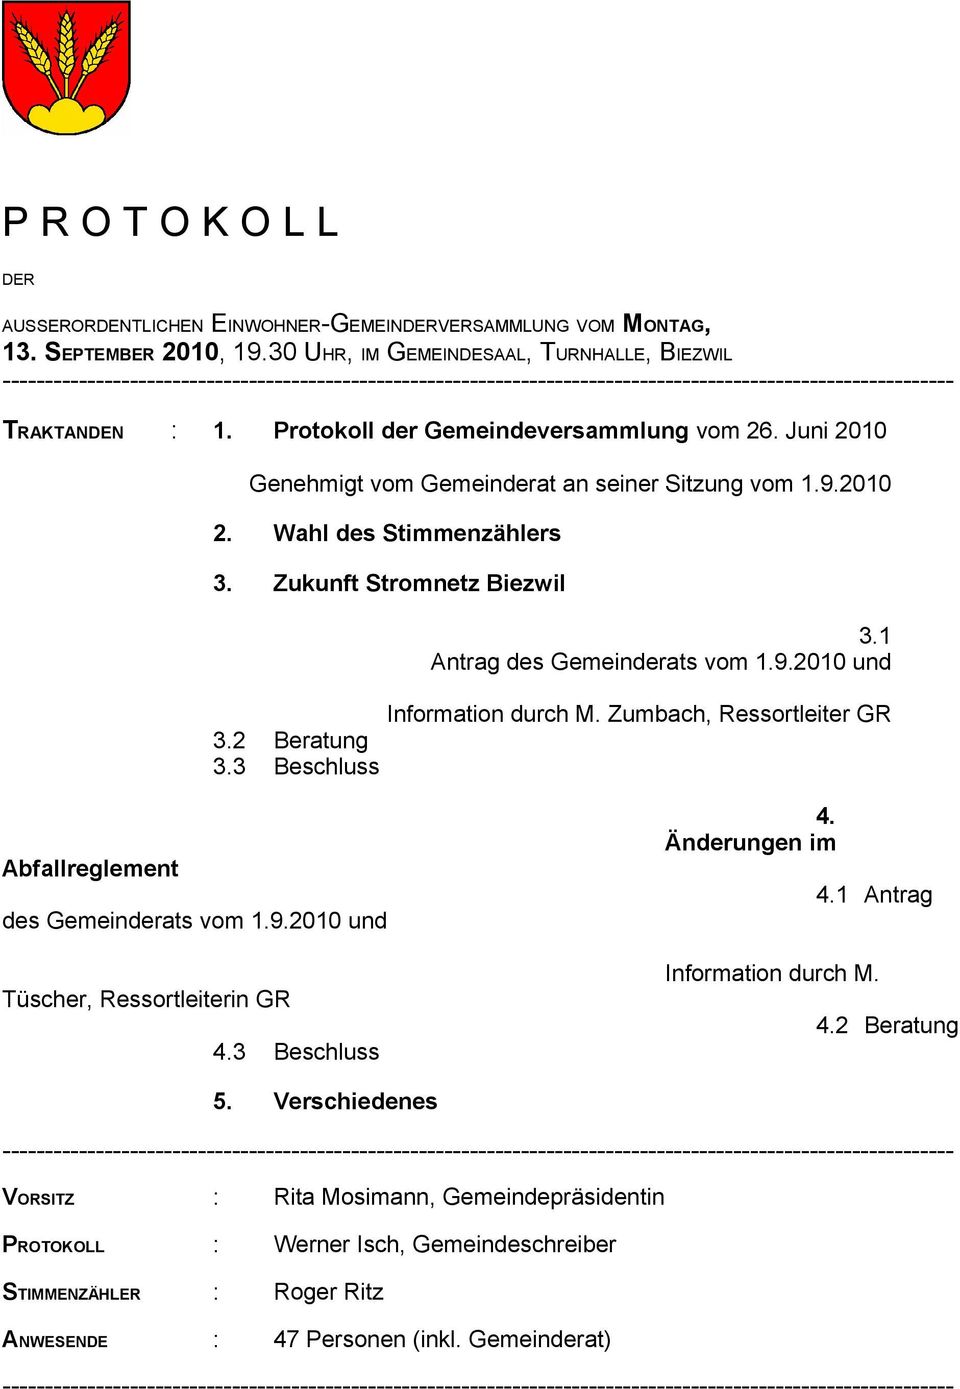 Protokoll der Gemeindeversammlung vom 26. Juni 2010 Genehmigt vom Gemeinderat an seiner Sitzung vom 1.9.2010 2. Wahl des Stimmenzählers 3. Zukunft Stromnetz Biezwil 3.2 Beratung 3.3 Beschluss 3.